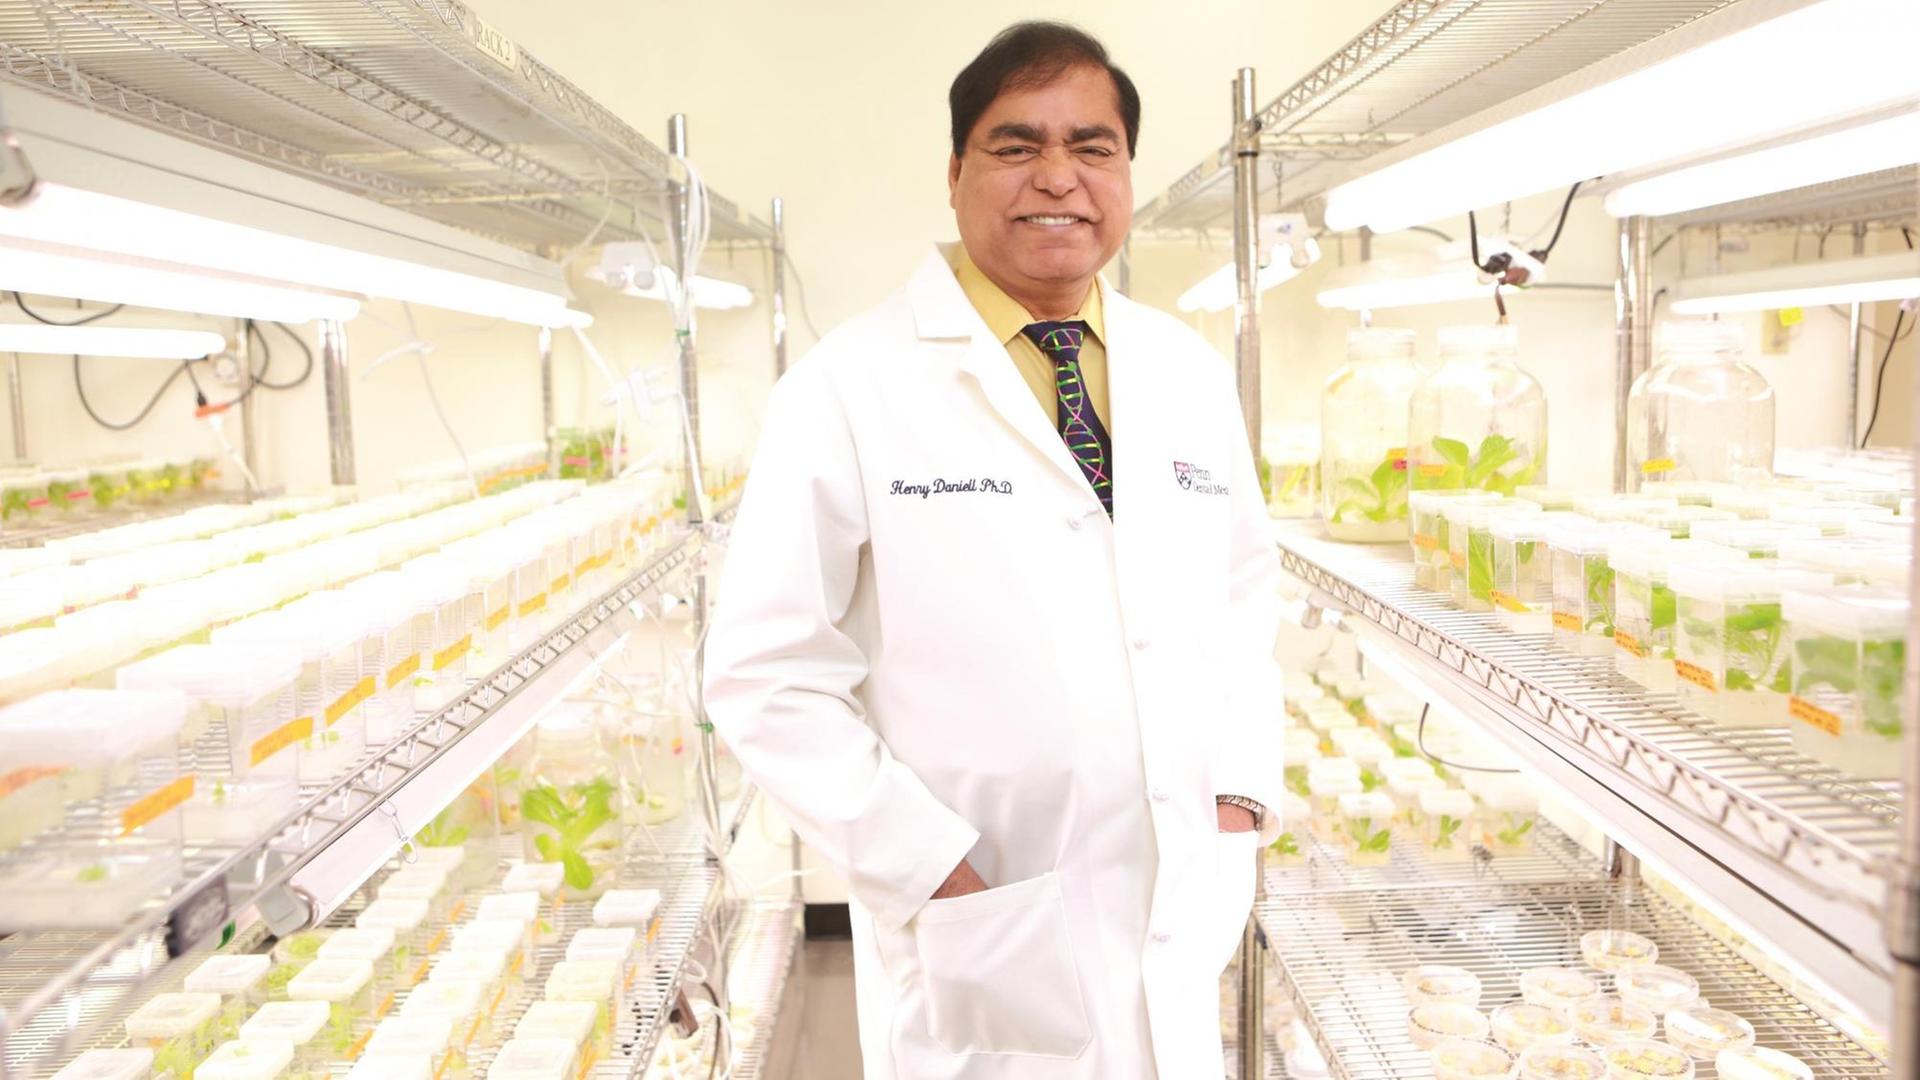 Der Biochemiker Prof. Henry Daniell hat Nahrungspflanzen genetisch so verändert, dass sie medizinische Wirkstoffe produzieren.